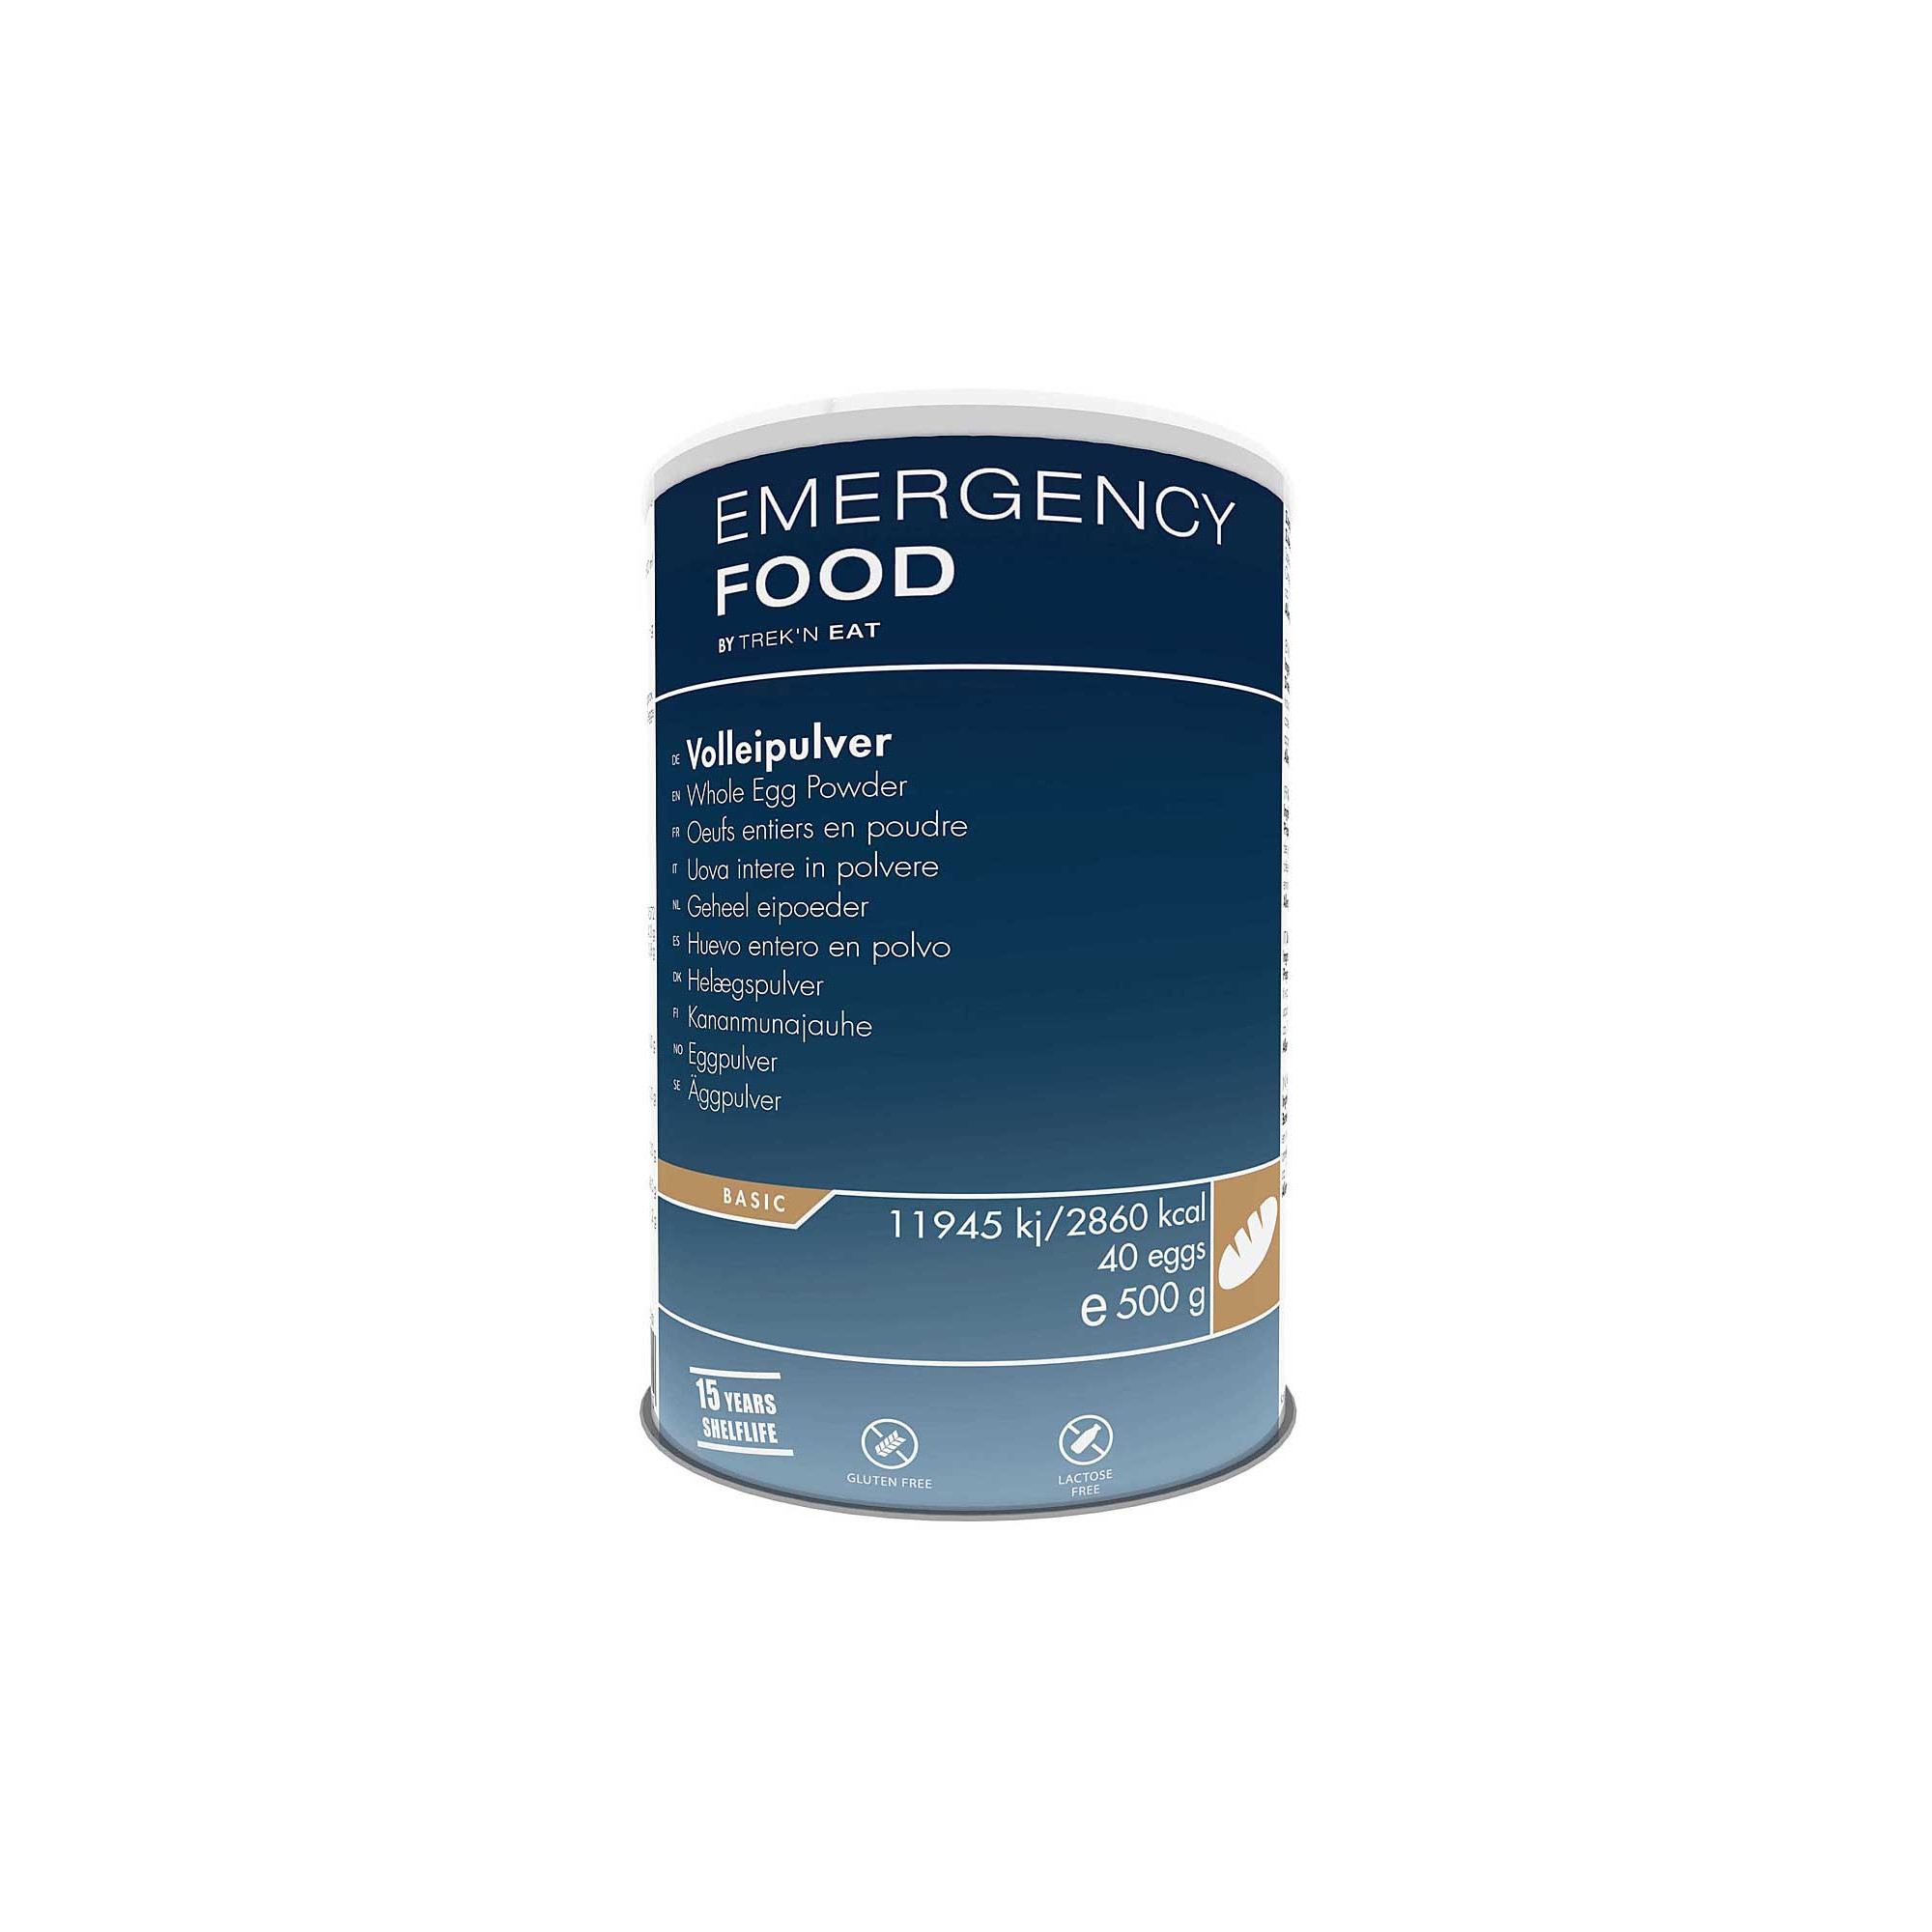 Oeuf entier en poudre 500 g Emergency Food